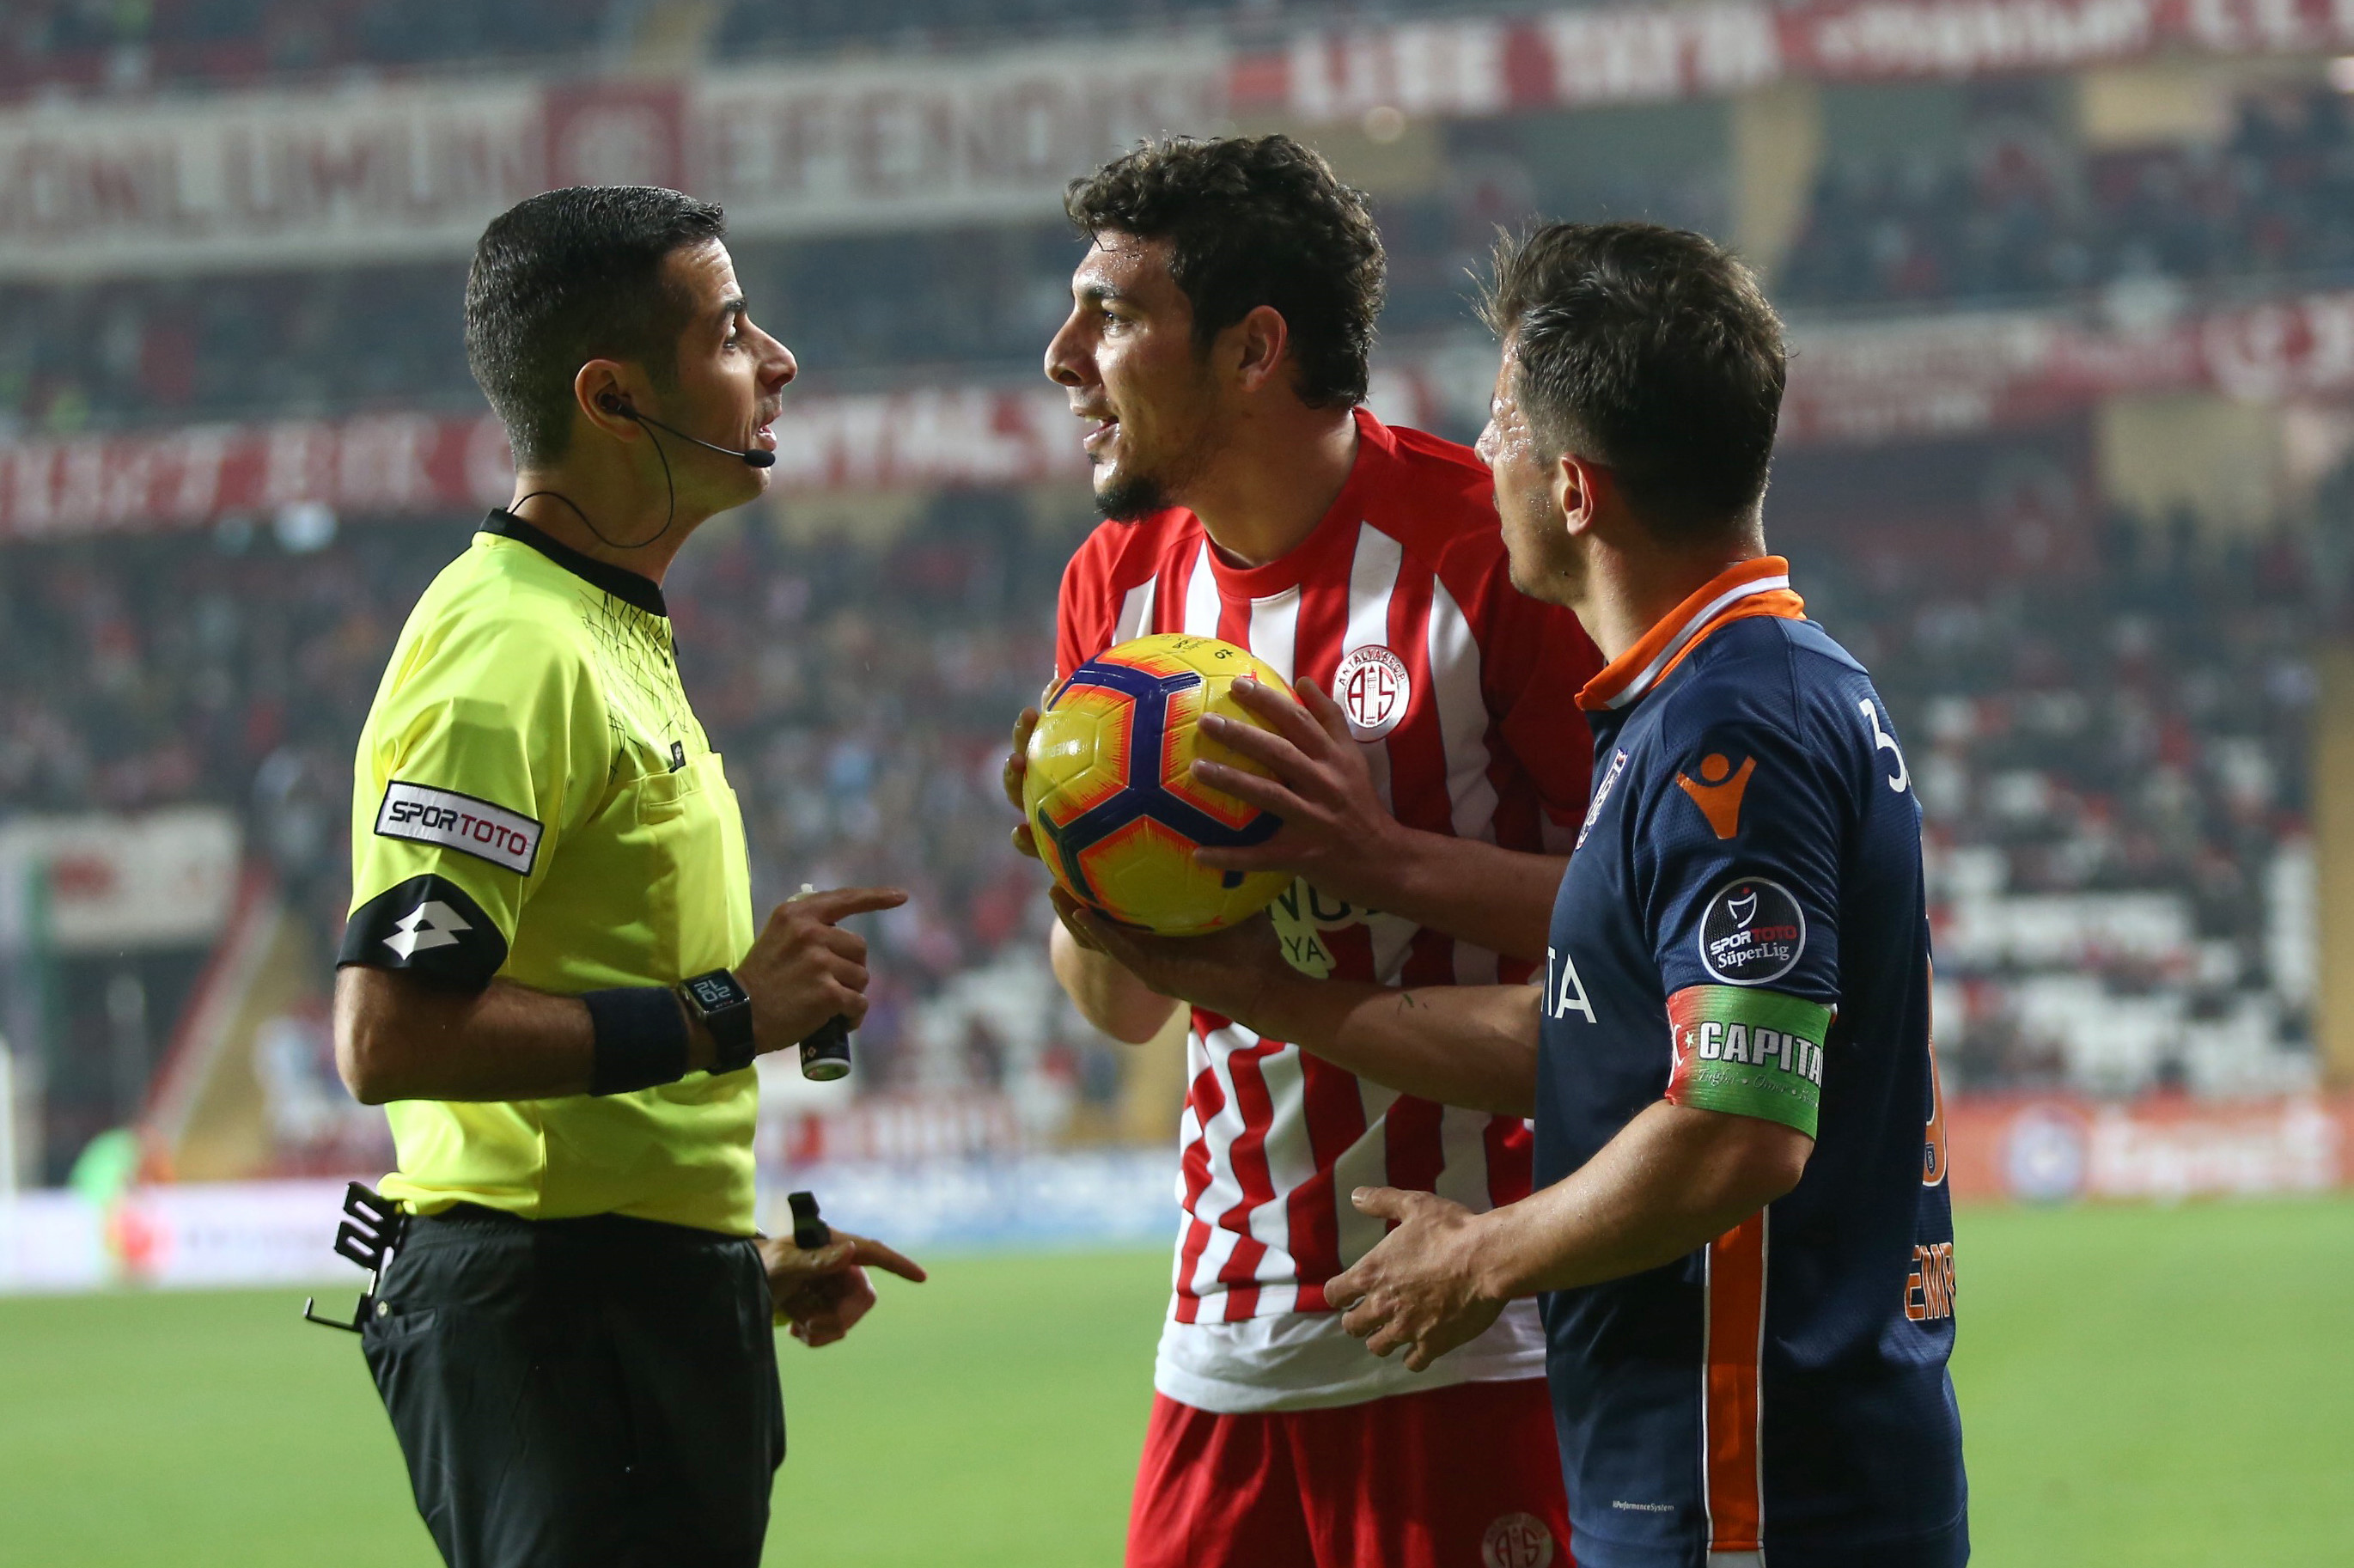 Antalyasporlu futbolcu Salih Dursun, Mete Kalkavan'ın hatalı kararına tepki gösterdi.